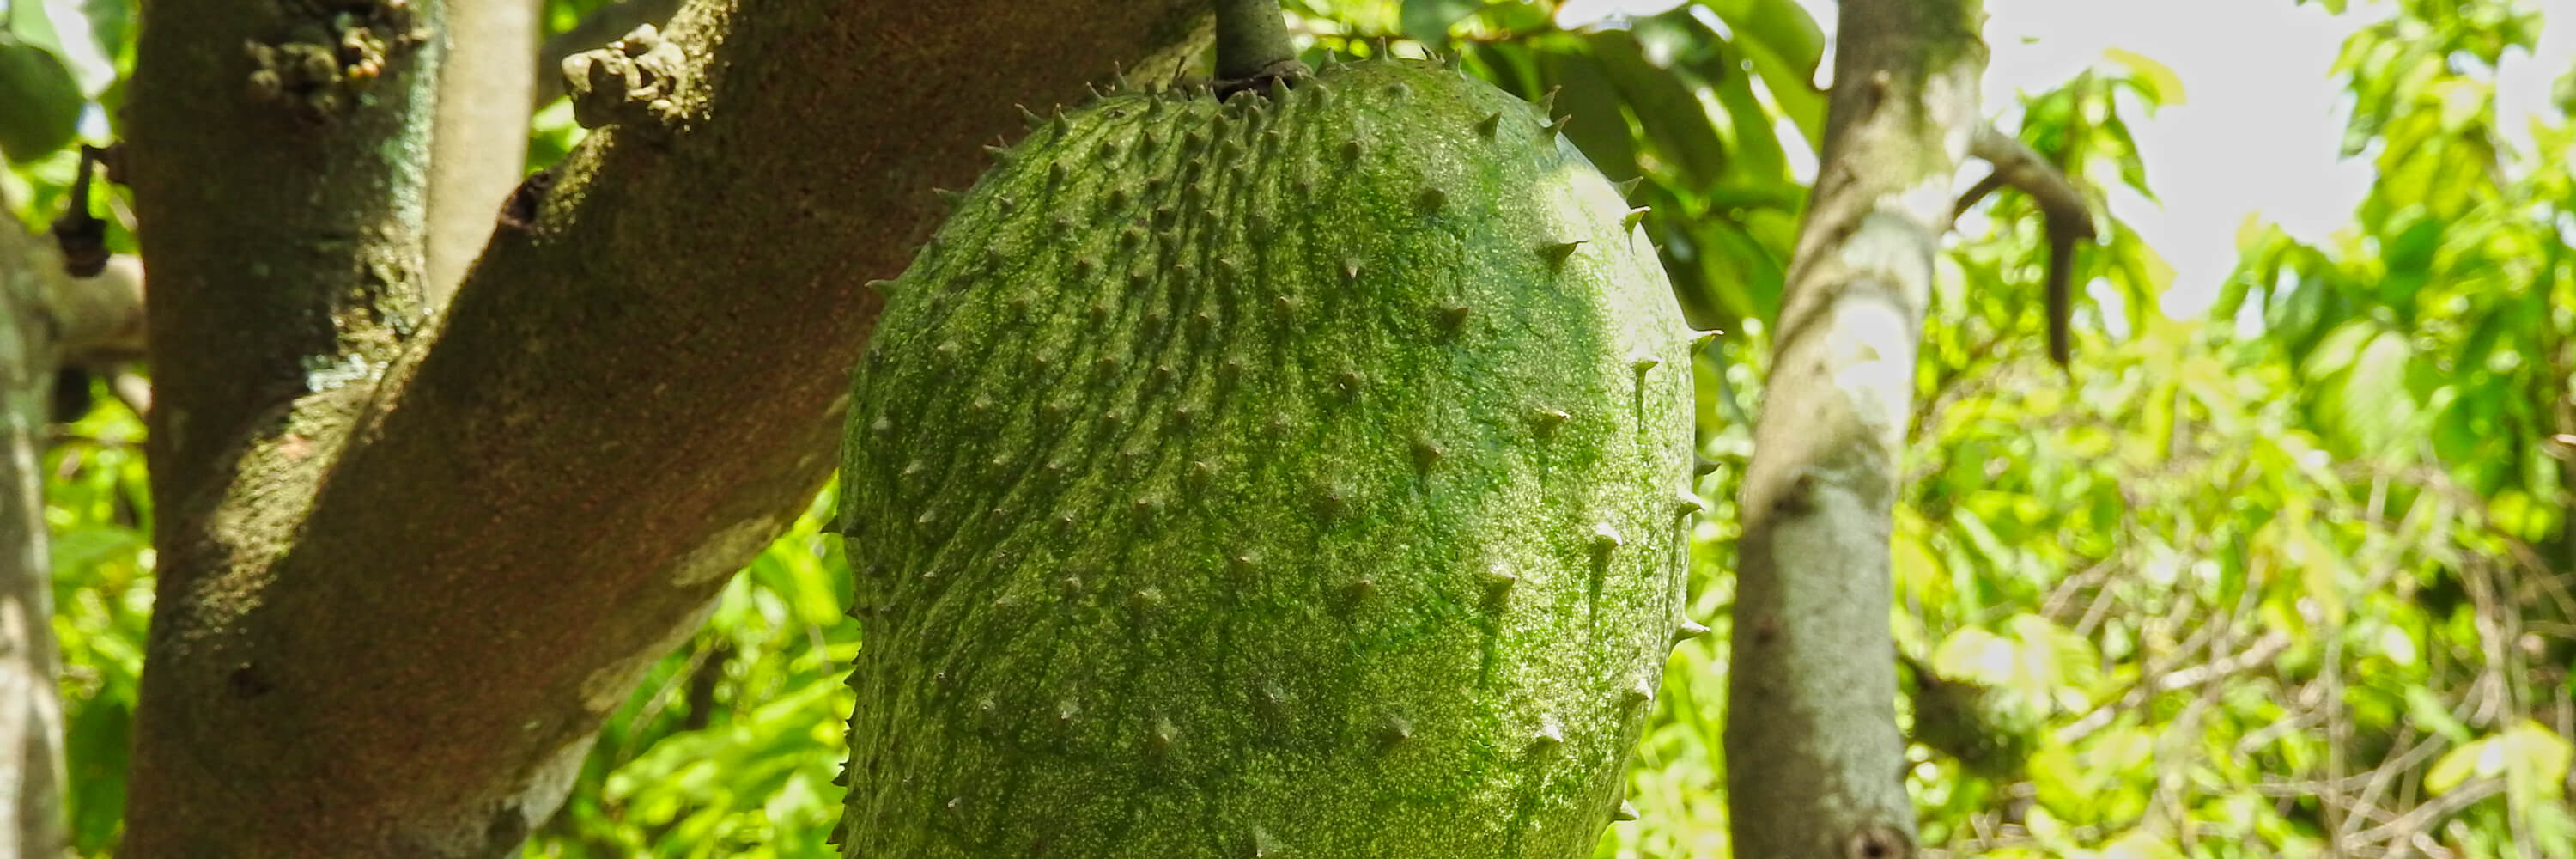 Fruto de guanabana